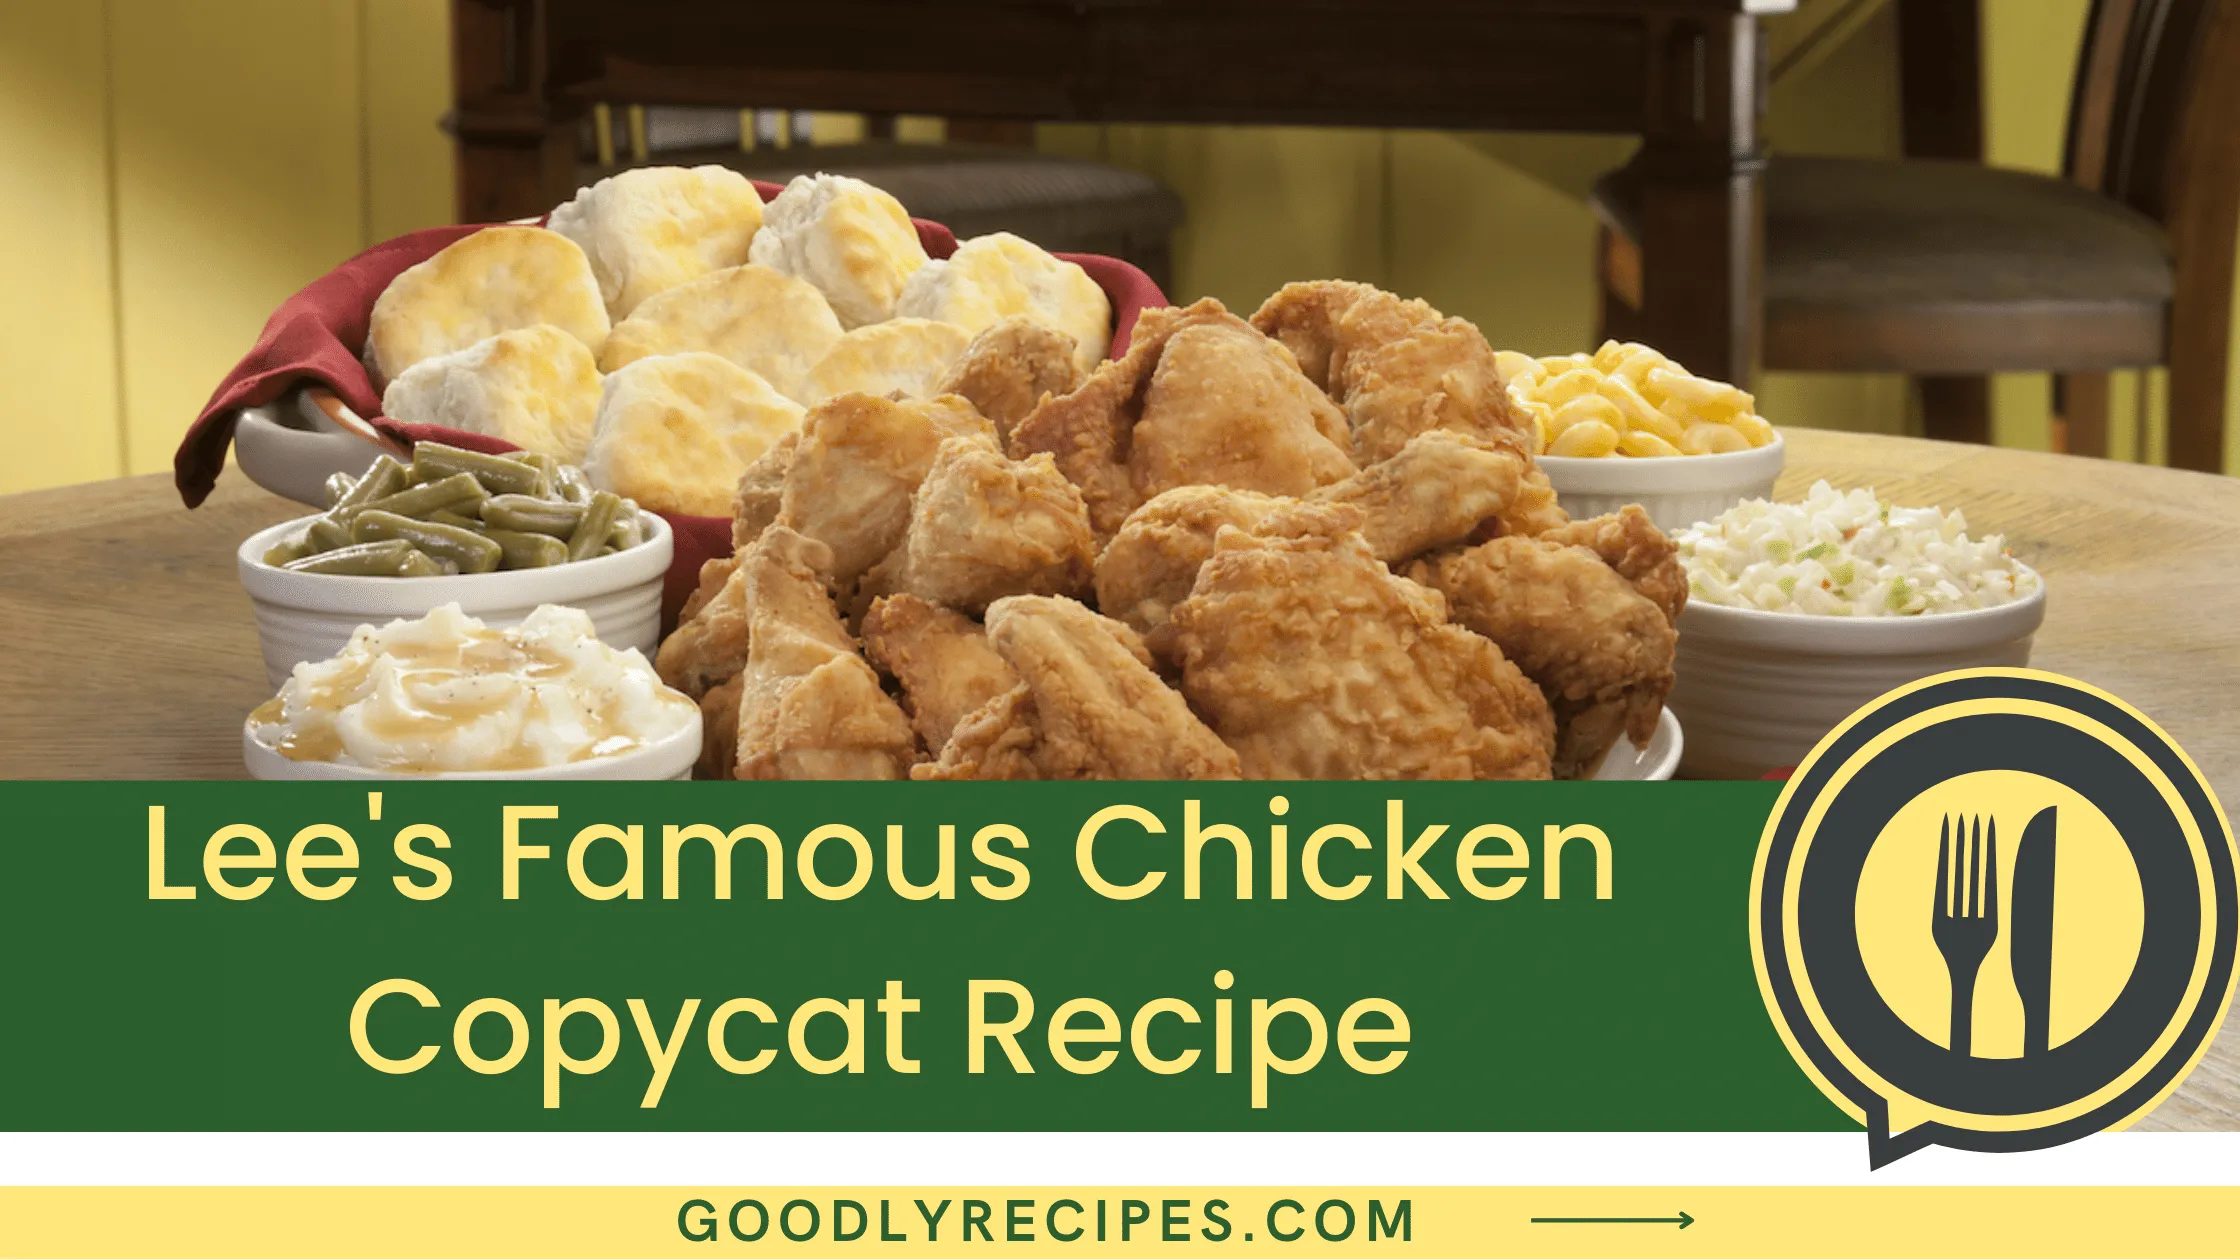 Lee's Famous Chicken Copycat Recipe